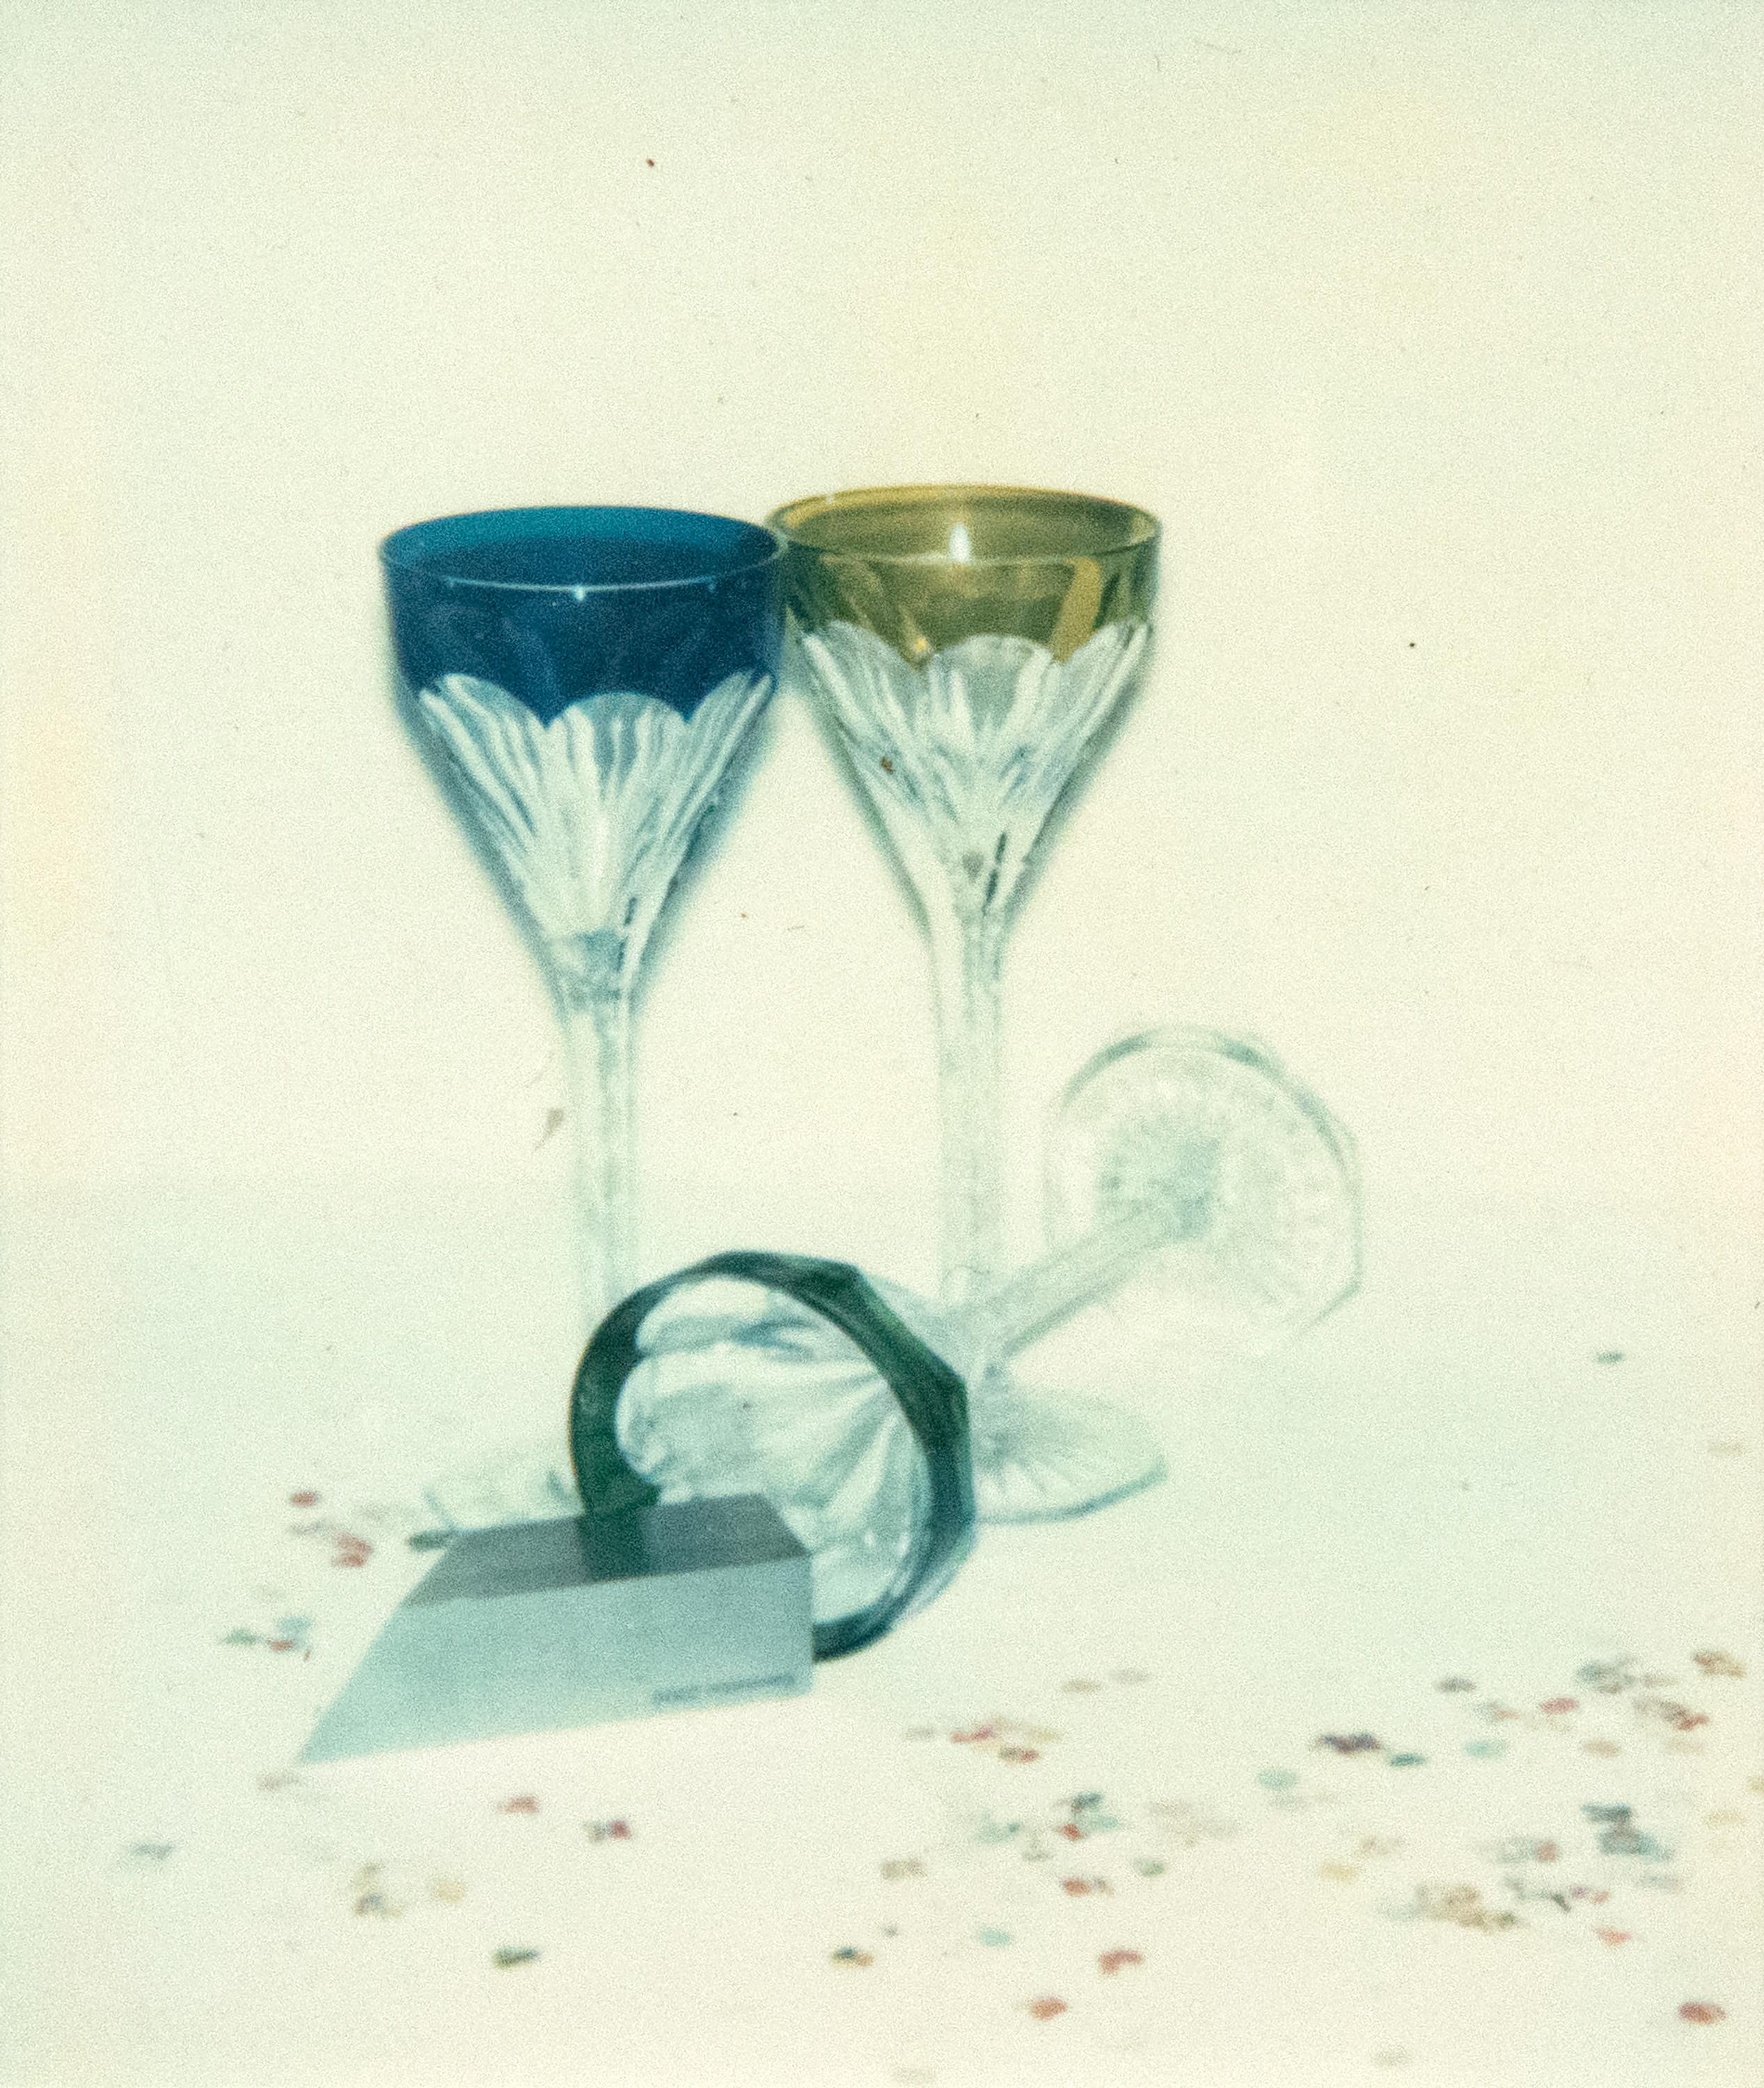 Committee 2000 Champagnergläser – Photograph von Andy Warhol